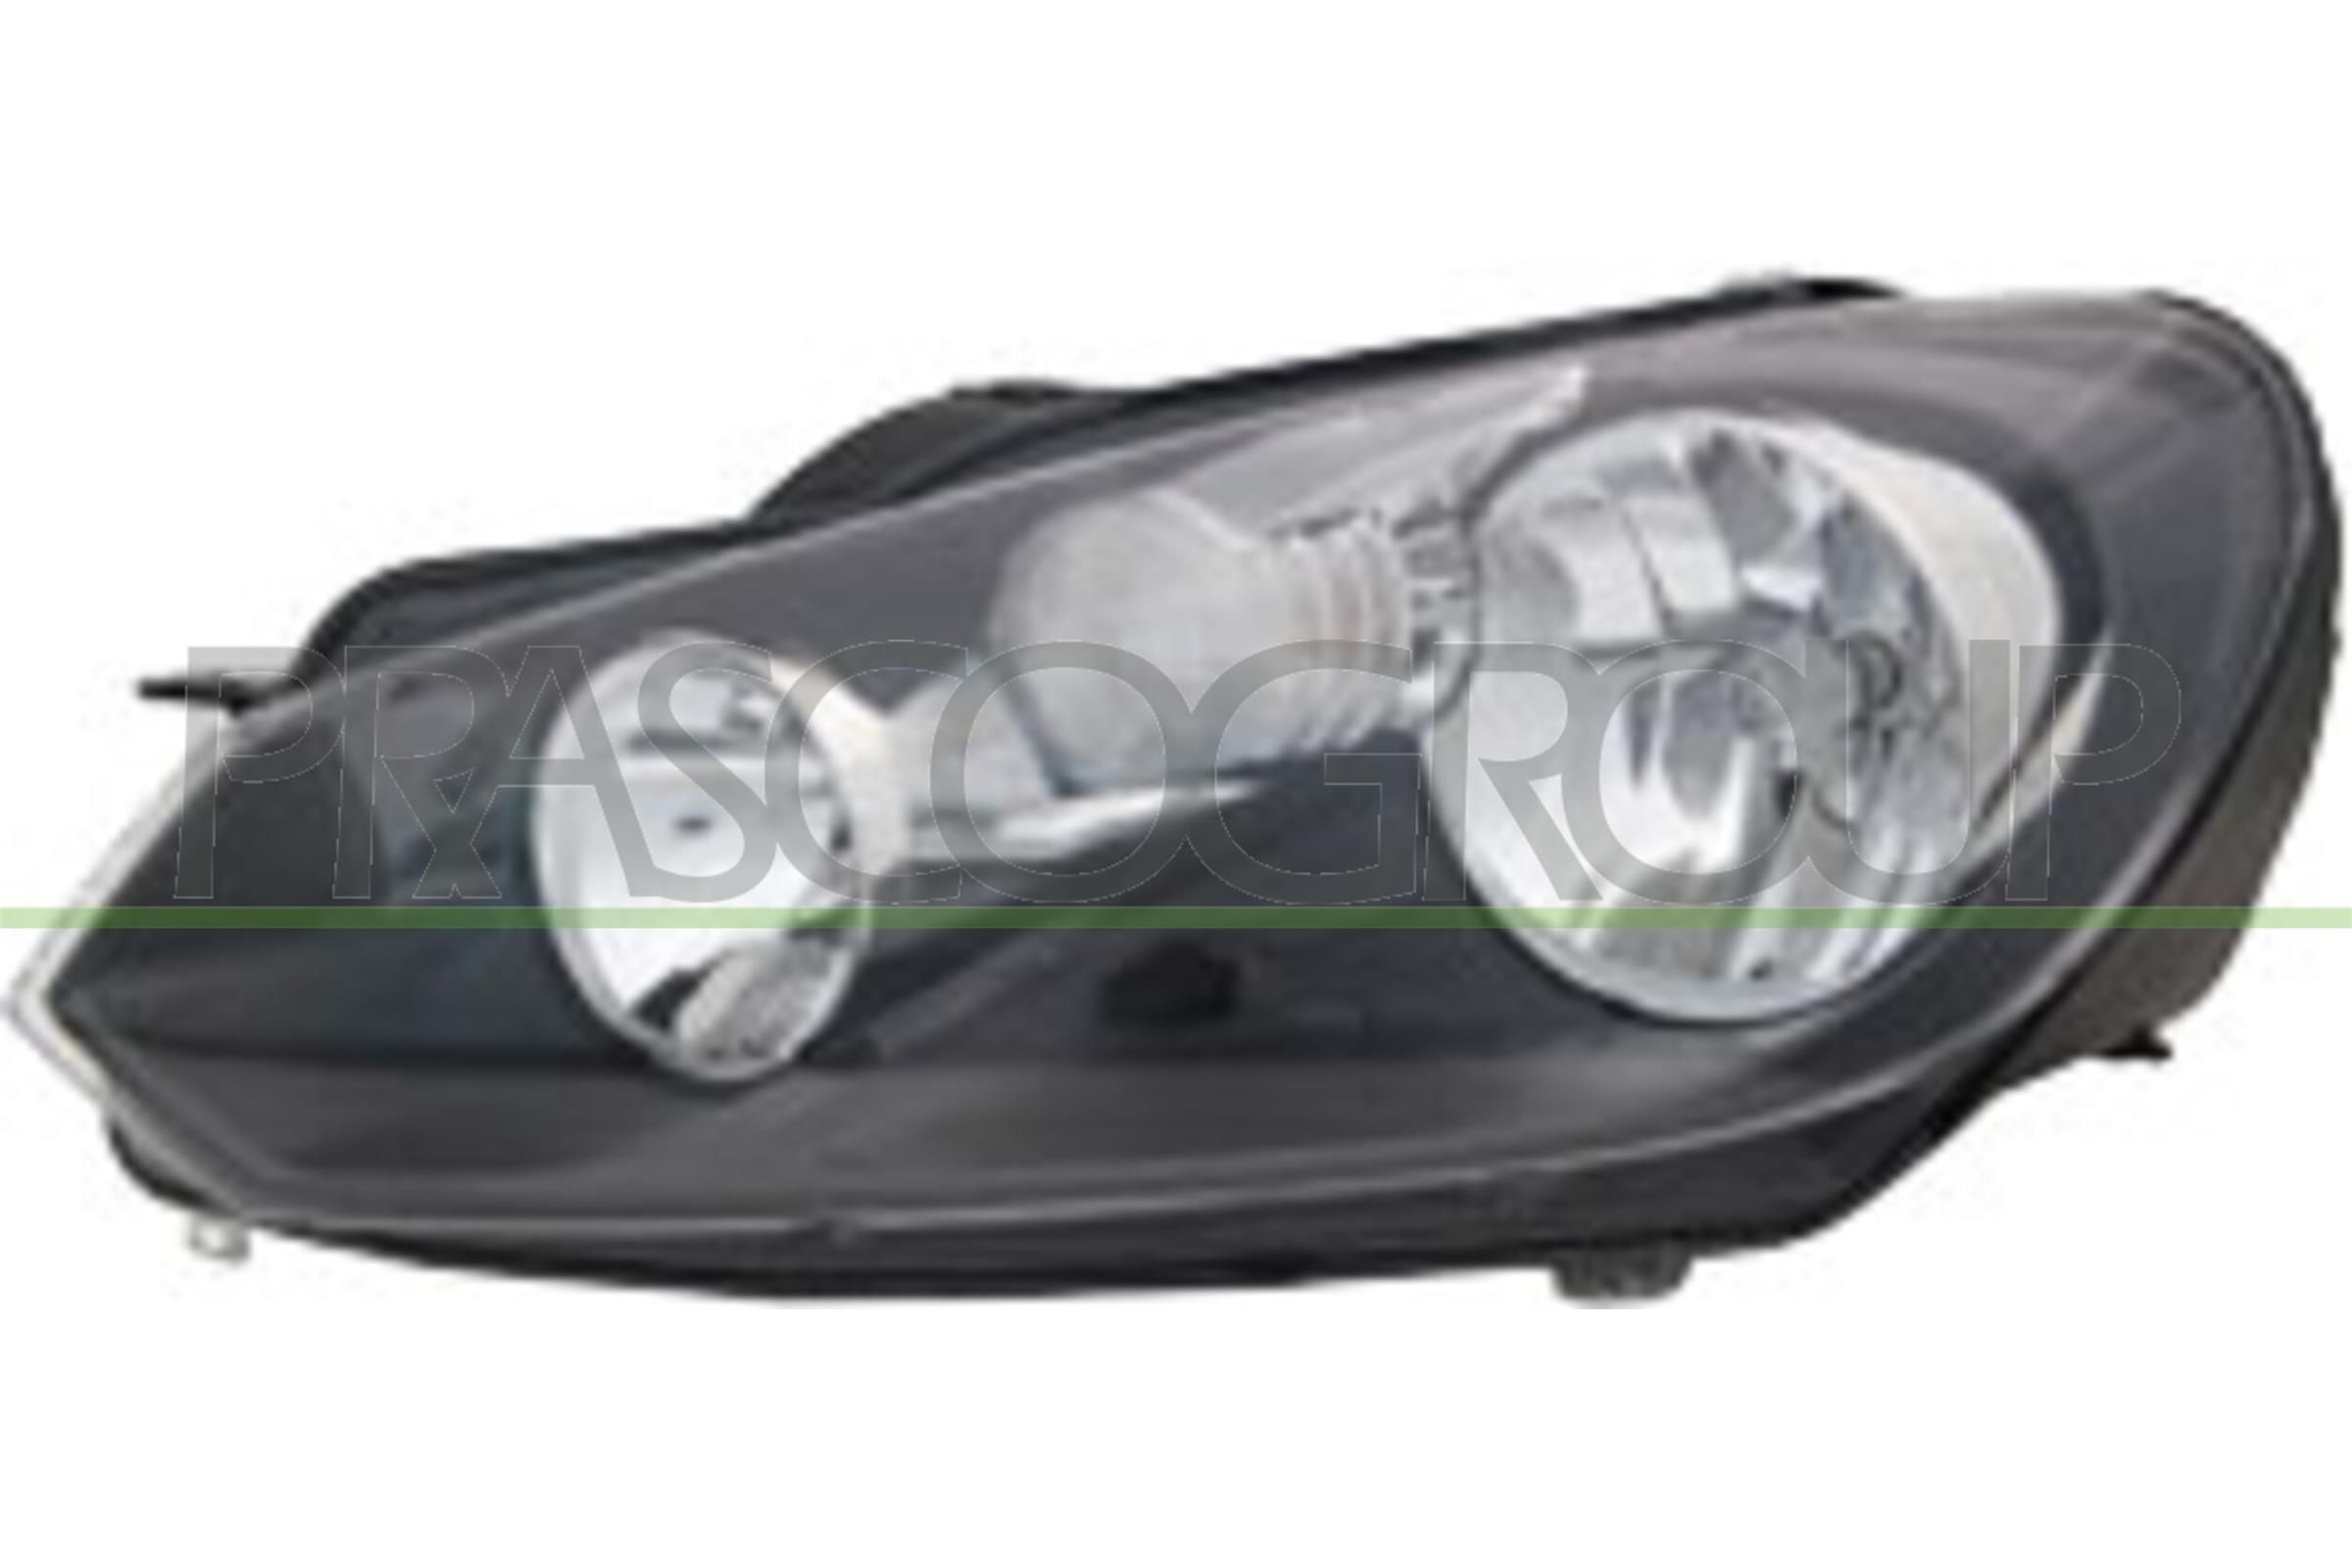 Abblendlicht-Glühlampe für Golf 6 1.2 TSI 105 PS / 77 kW CBZB 2008 Benzin  LED und Xenon ❱❱❱ günstig online kaufen